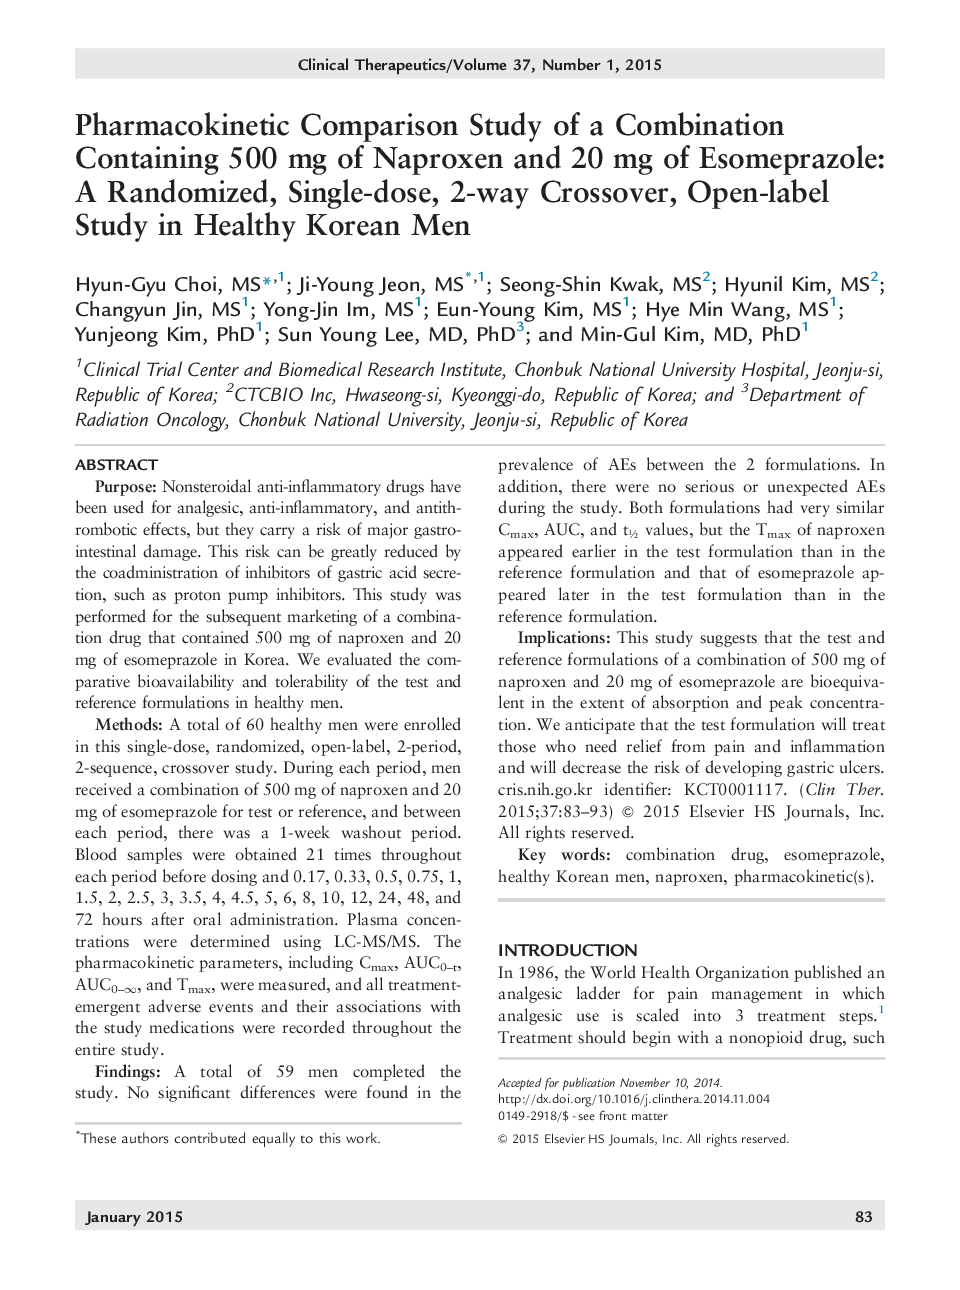 مقایسه فارماکوکینتیک یک ترکیب حاوی 500 میلیگرم ناپروکسن و 20 میلیگرم اسموپرازول: یک مطالعه کیفی تصادفی، یک دوز، دو طرفه و یک بازه در مردان کره ای سالم 